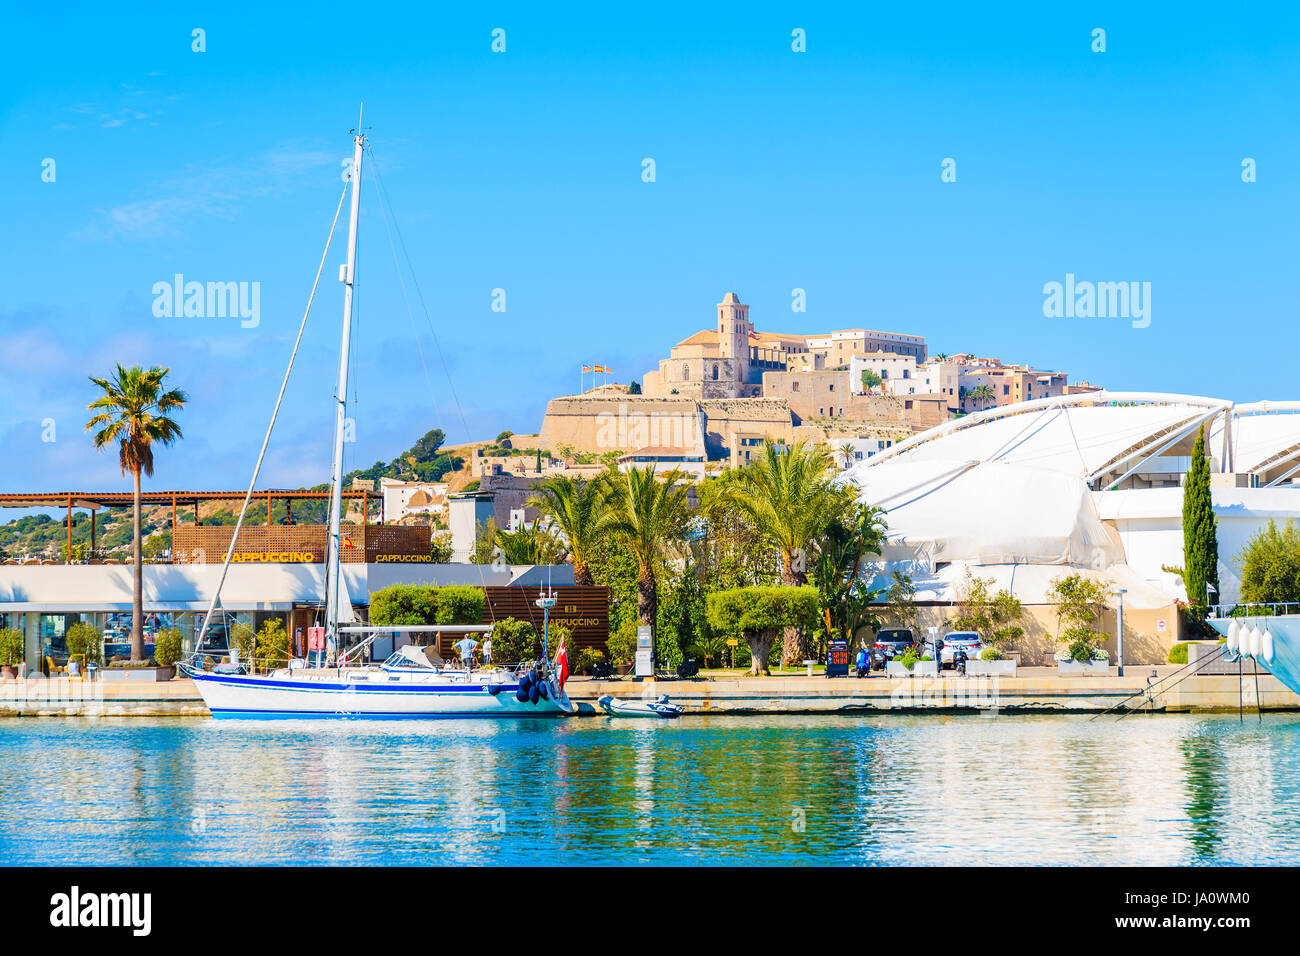 Porto di Ibiza, Spagna - 18 Maggio 2017: vista della vecchia città di Ibiza e barca a vela in Ibiza (Ibiza) porta sull isola di Ibiza, Spagna. Foto Stock